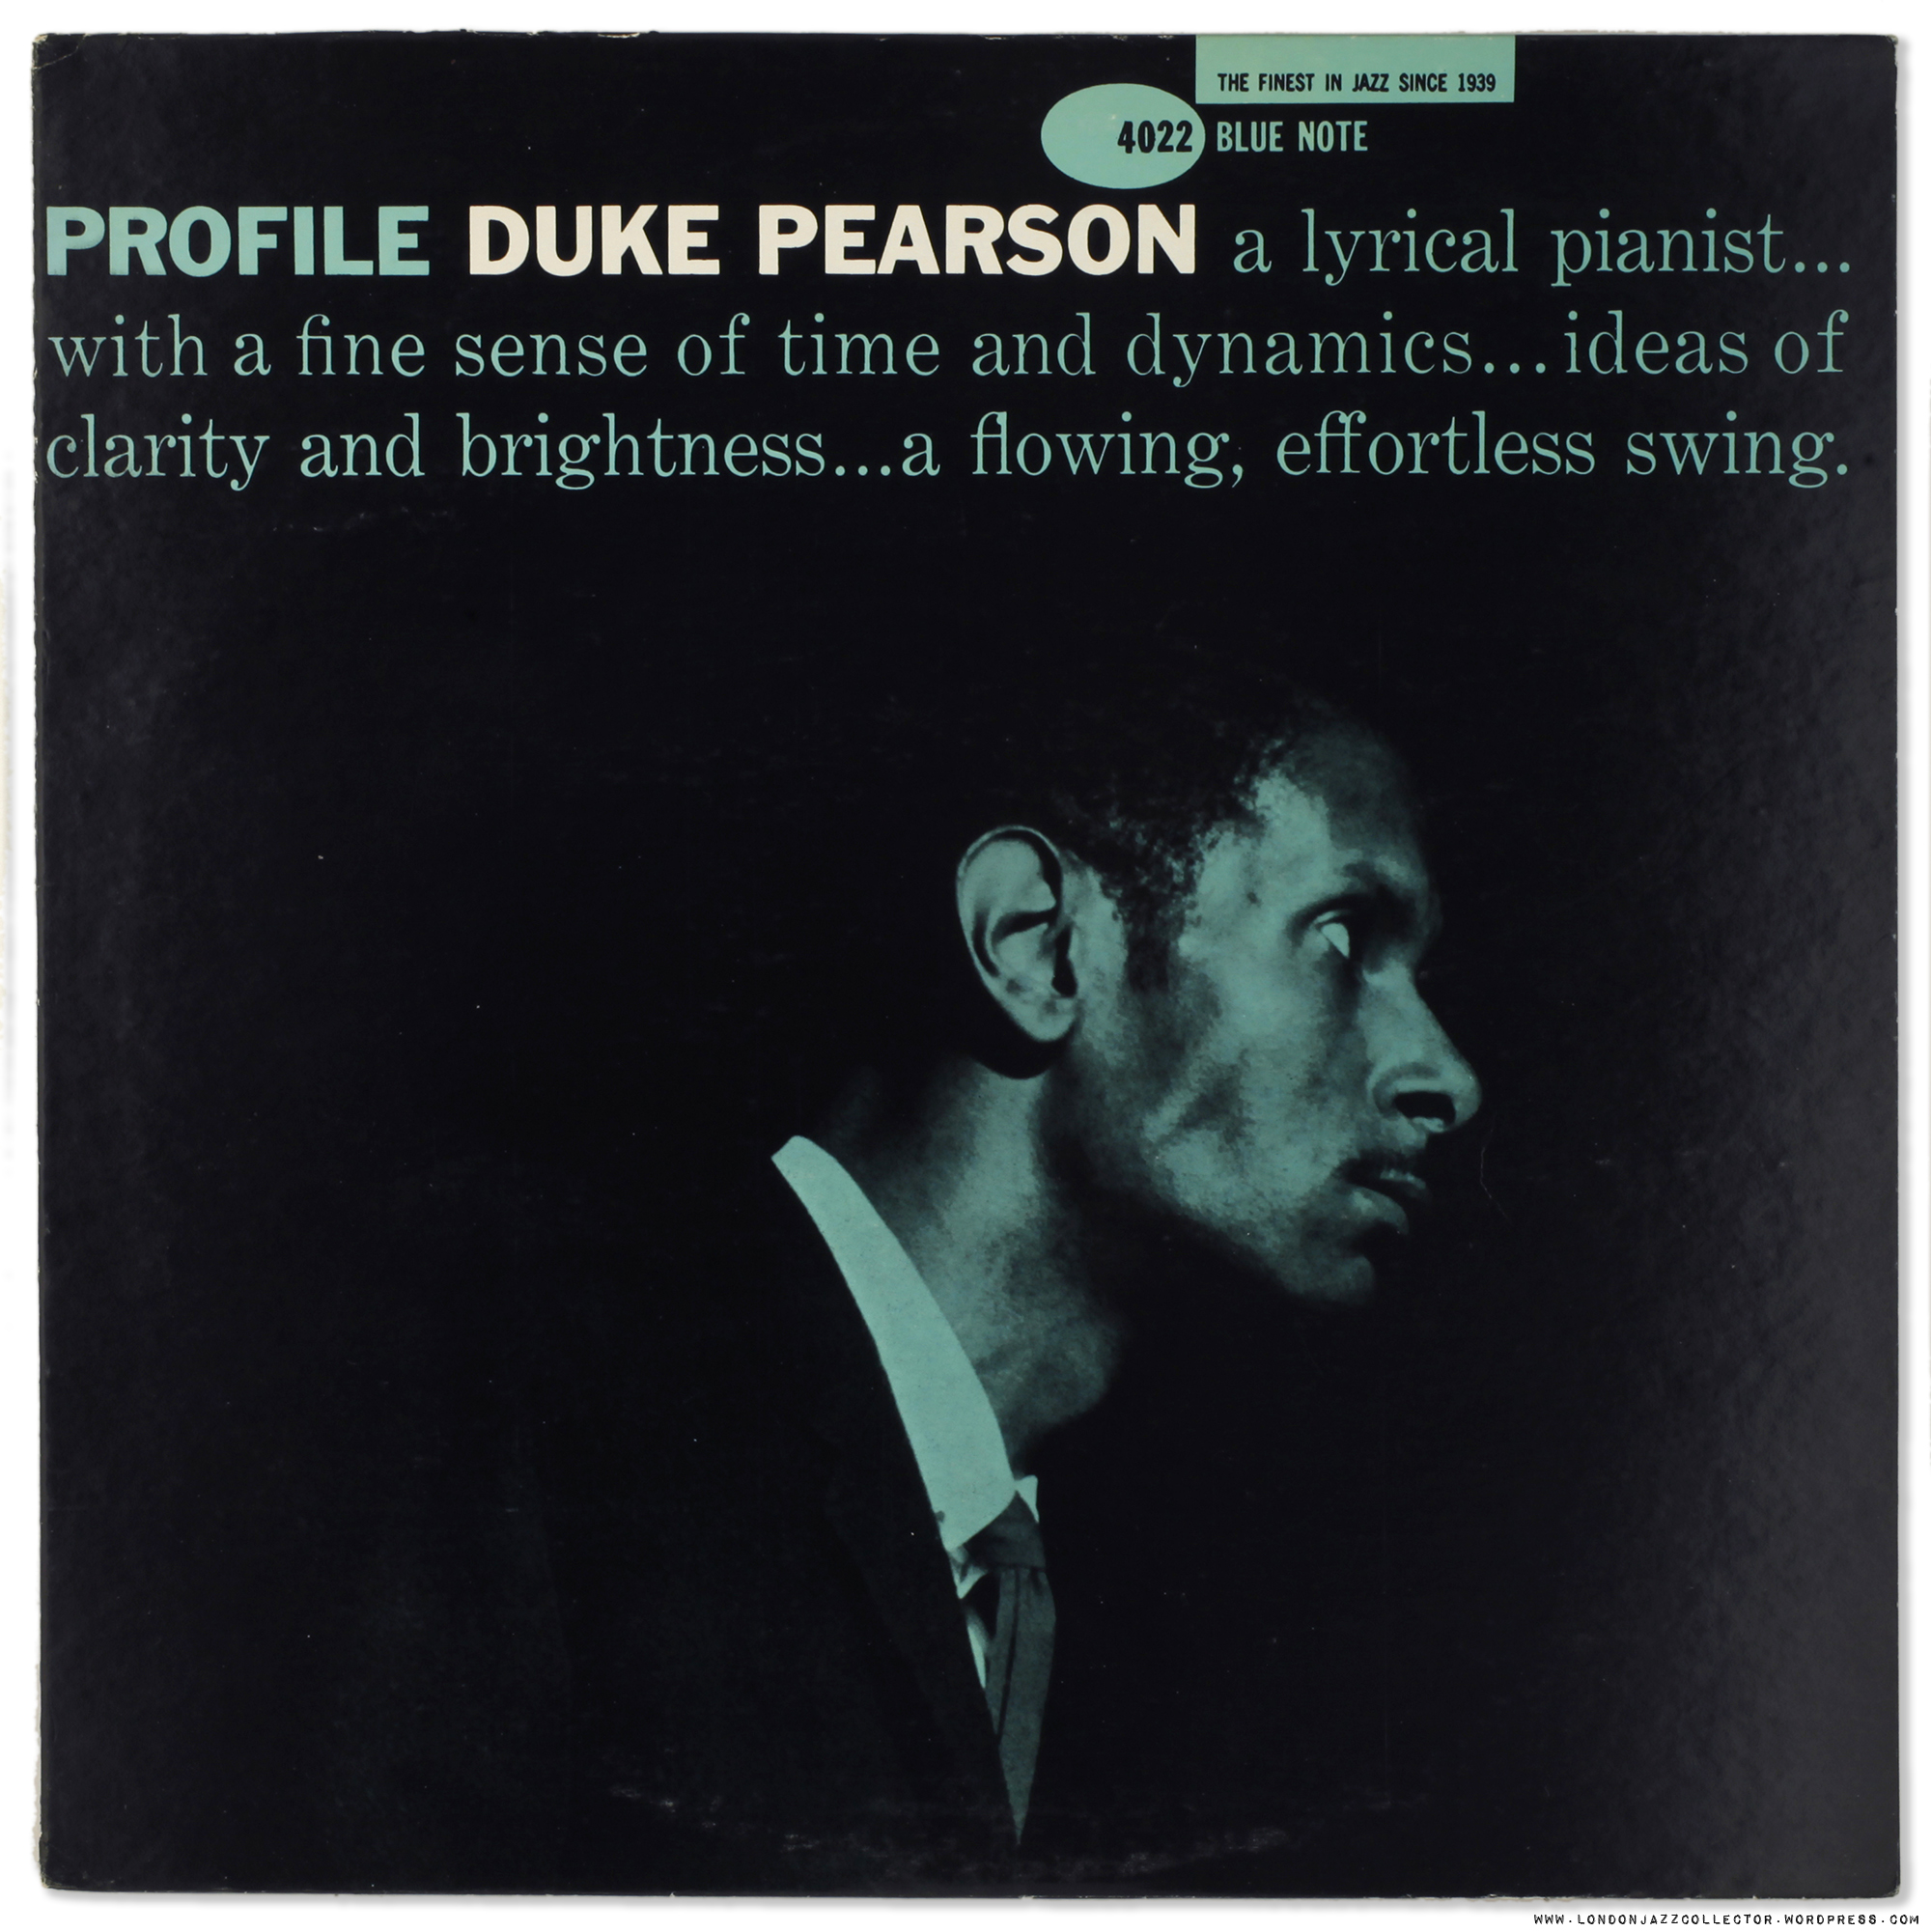 duke-pearson-profile-cover-2000px-ljc.jp